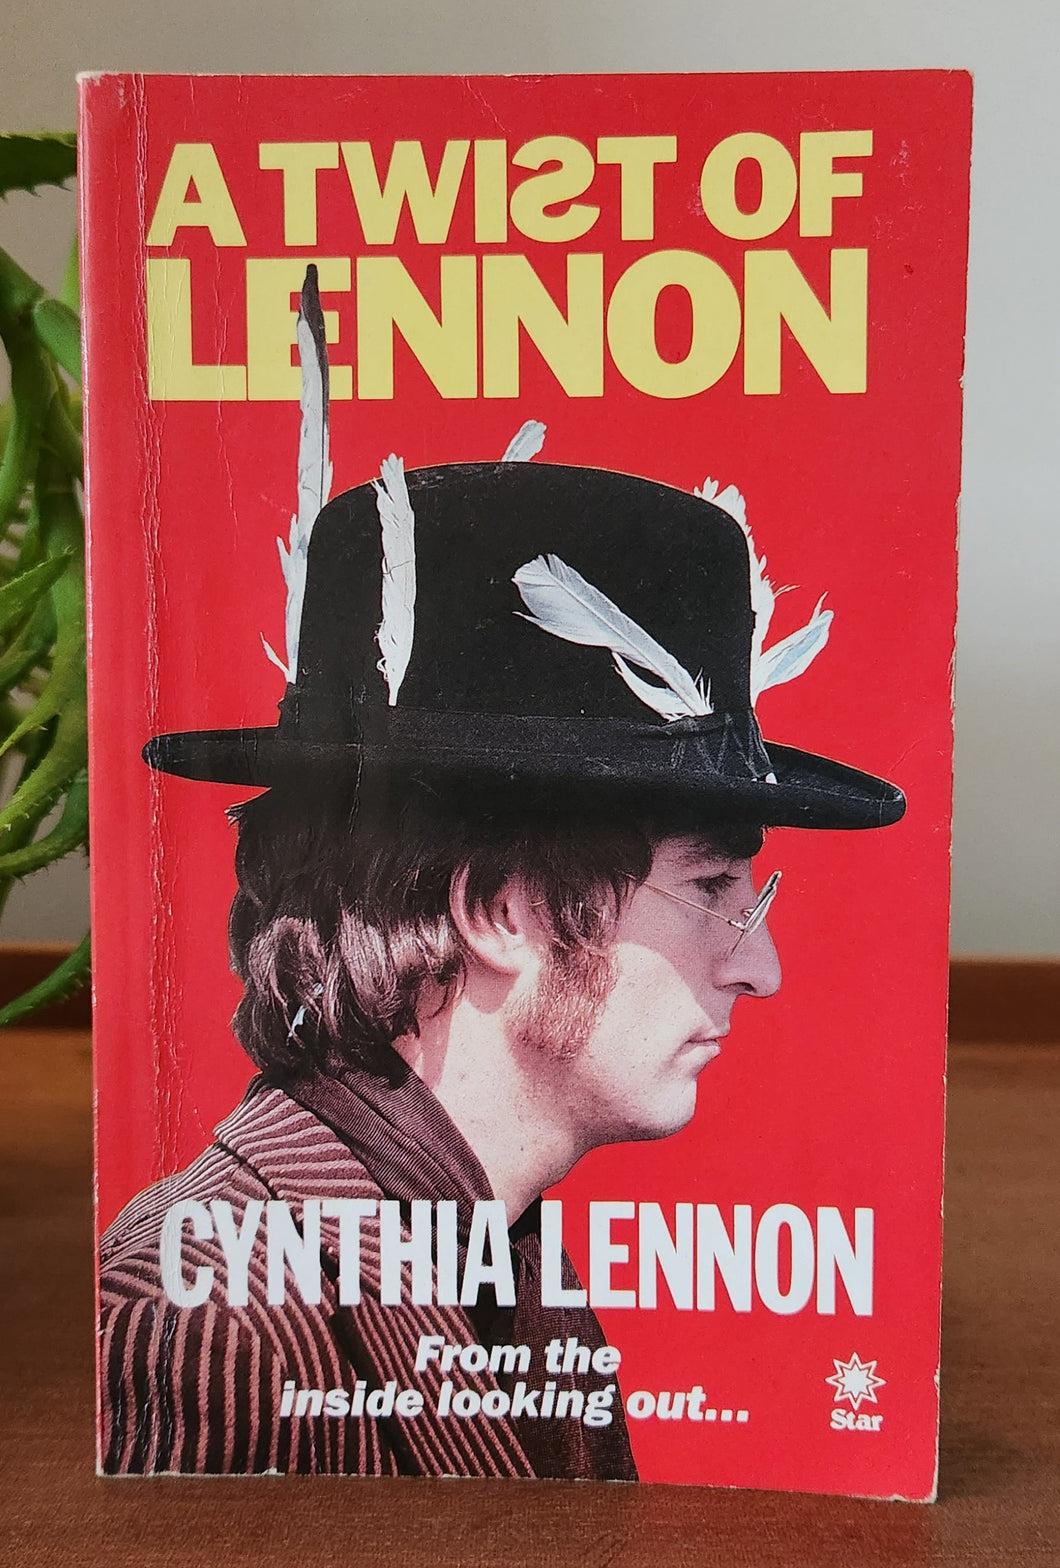 A Twist of Lennon by Cynthia Lennon